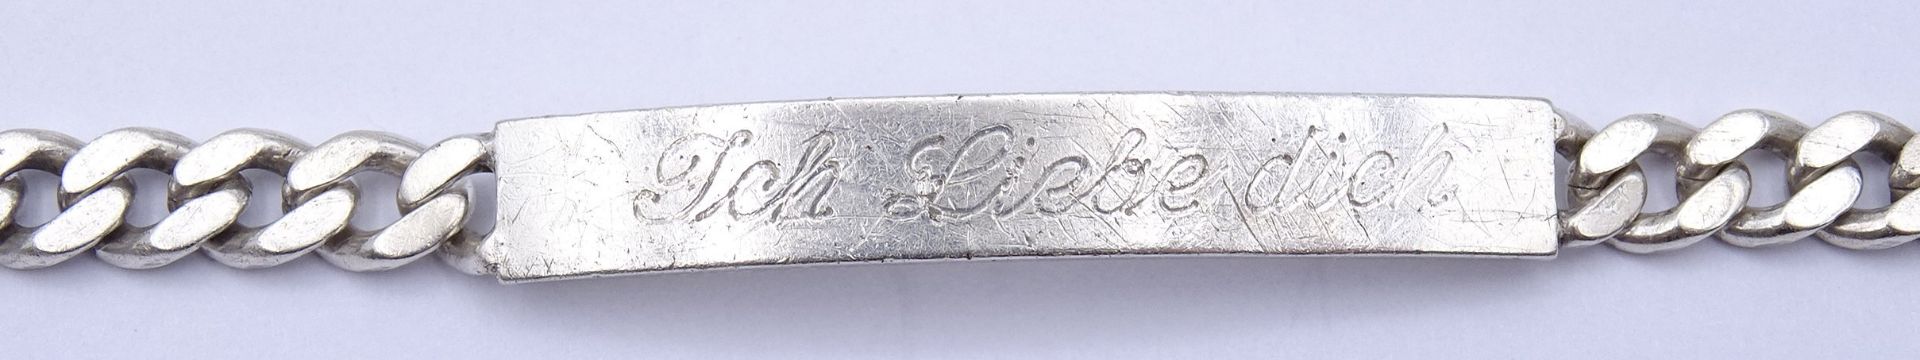 925er Silber Armband mit Gravur "Ich liebe dich - deine Maus", L. 22cm, 15,7g. - Bild 2 aus 3